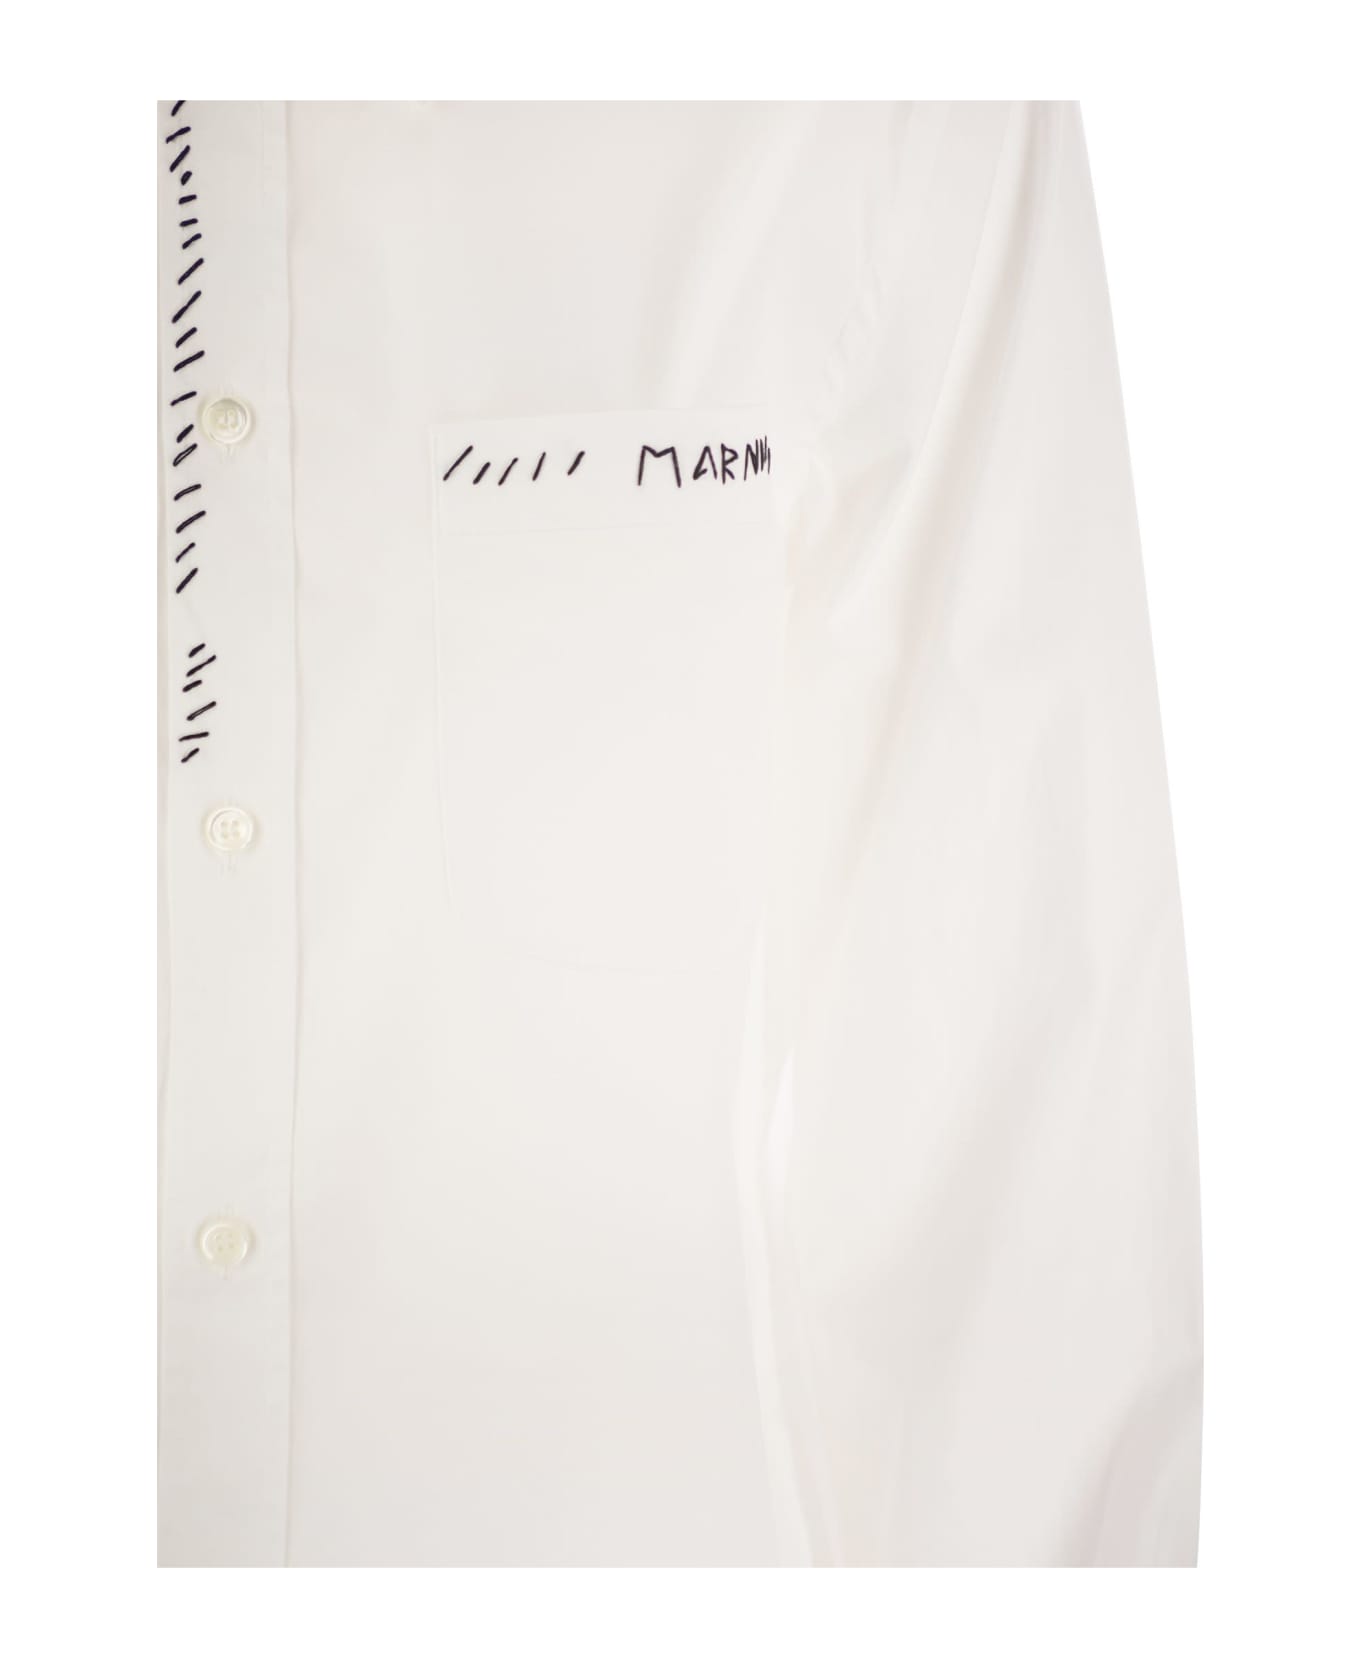 Marni White Cotton Shirt - White シャツ